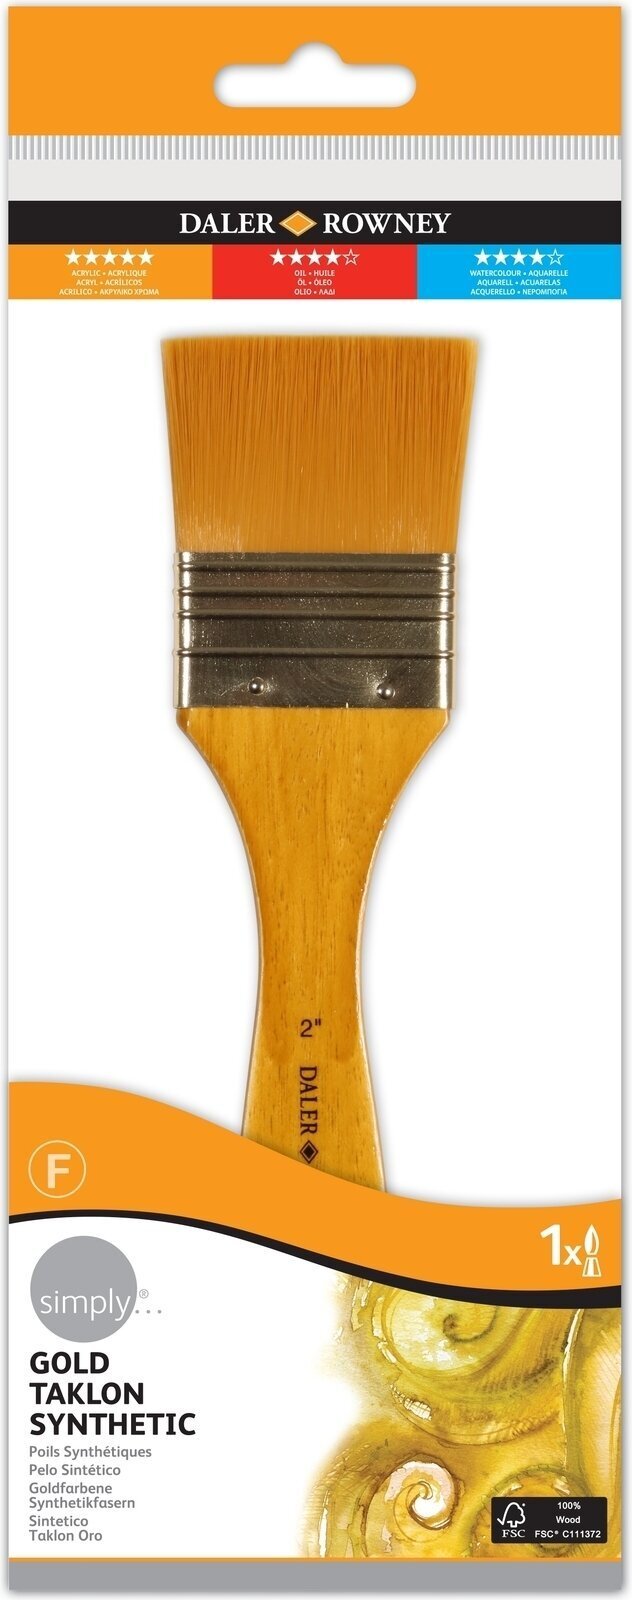 Pincel de pintura Daler Rowney Simply Acrylic Brush Gold Taklon Synthetic Pincel chato 2 1 un.